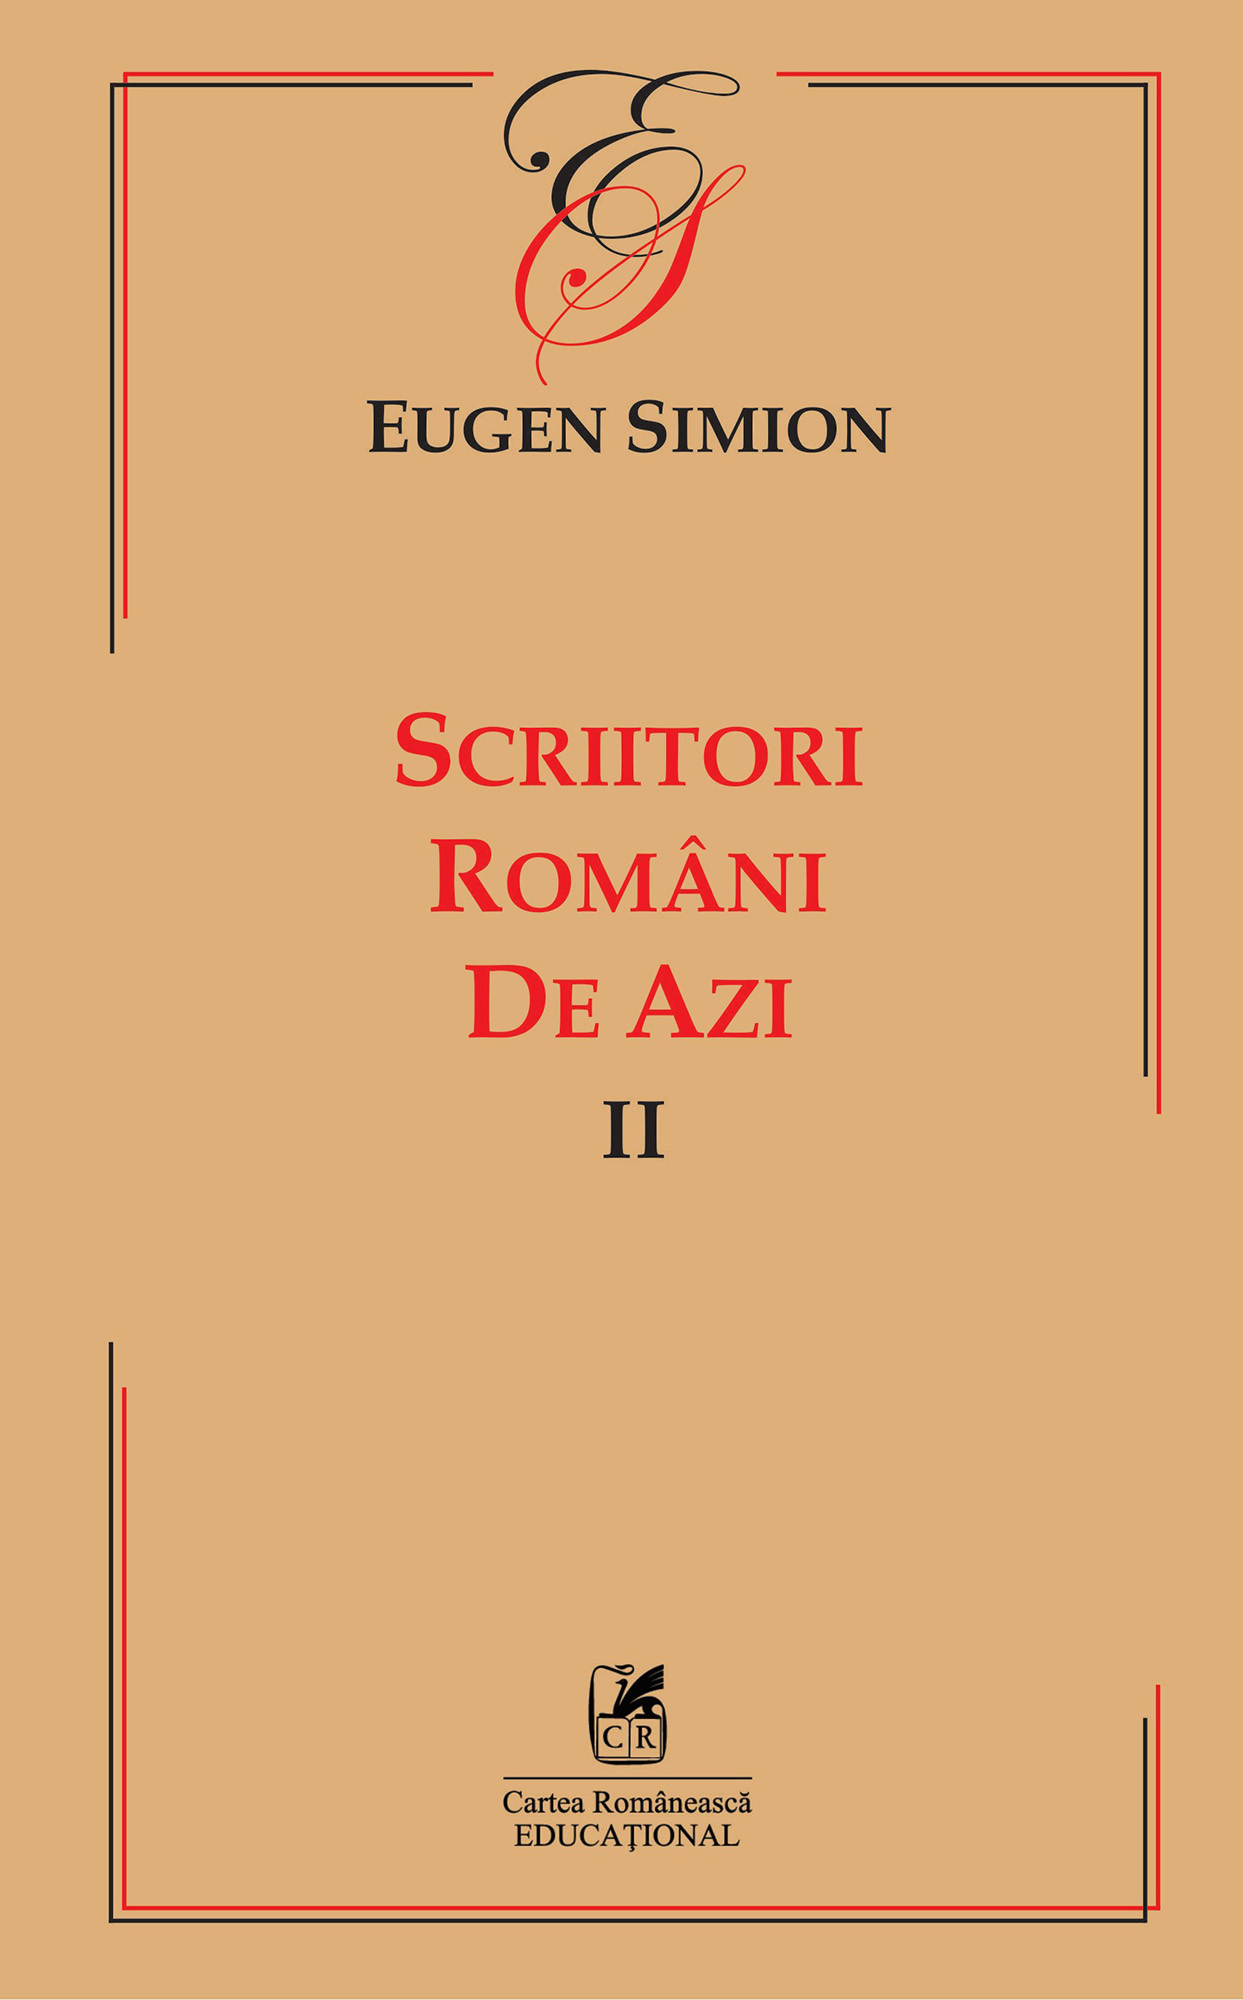 PDF Scriitorii romani de azi. Volumul II | Eugen Simion Cartea Romaneasca educational Carte